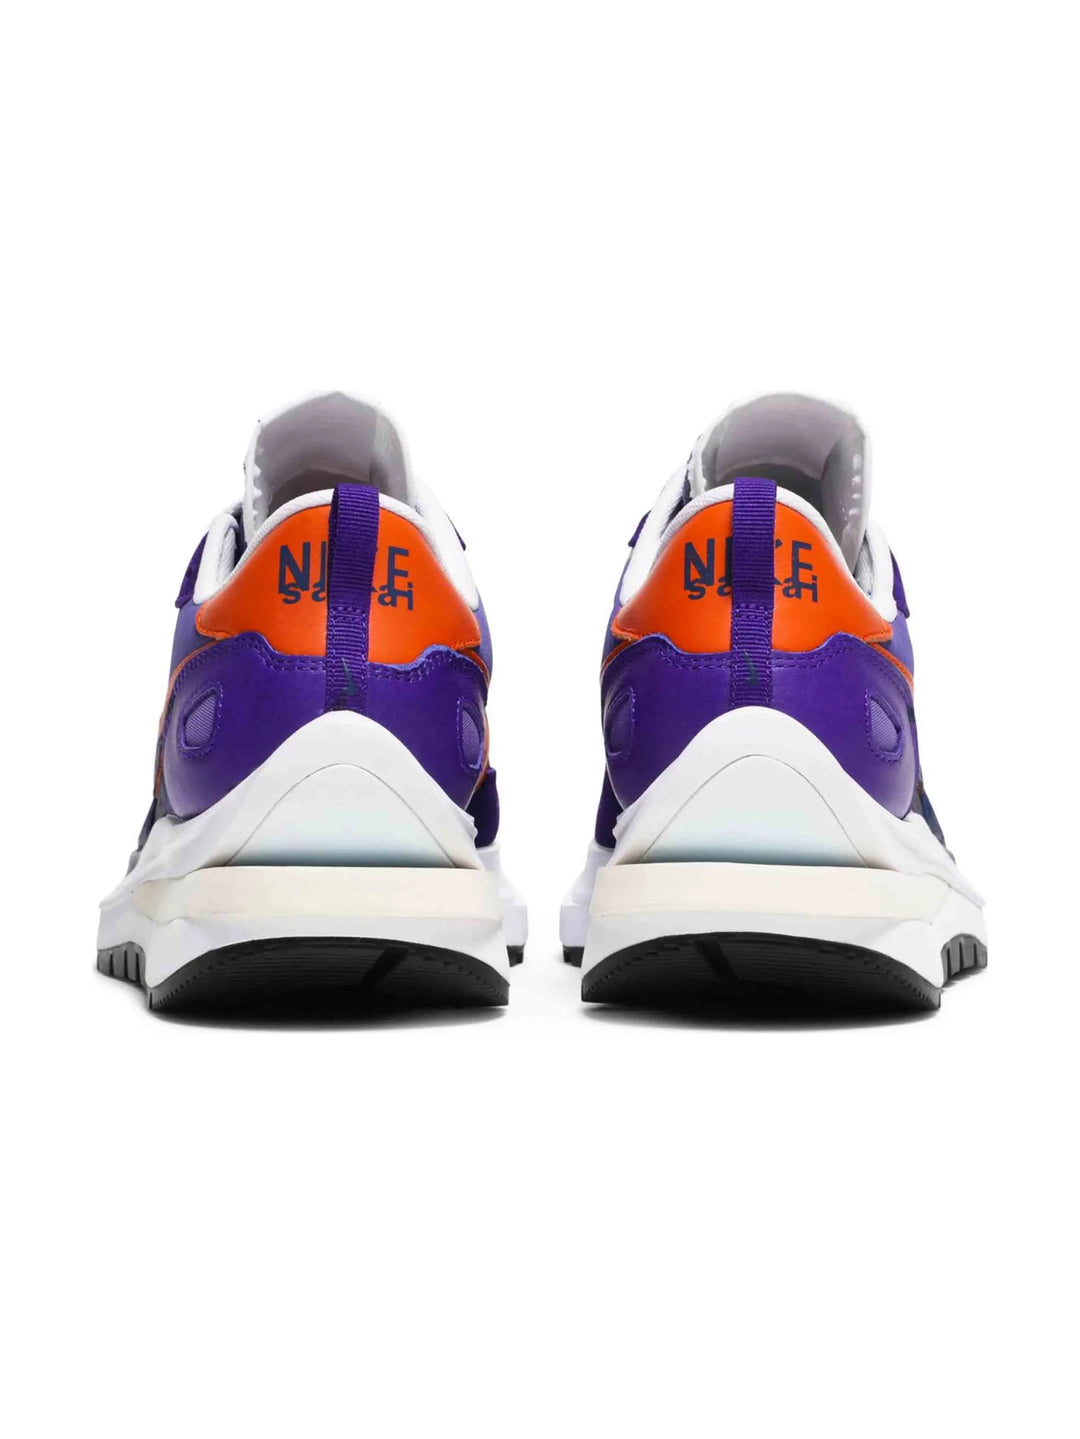 Nike Sacai x Vaporwaffle Dark Iris Prior